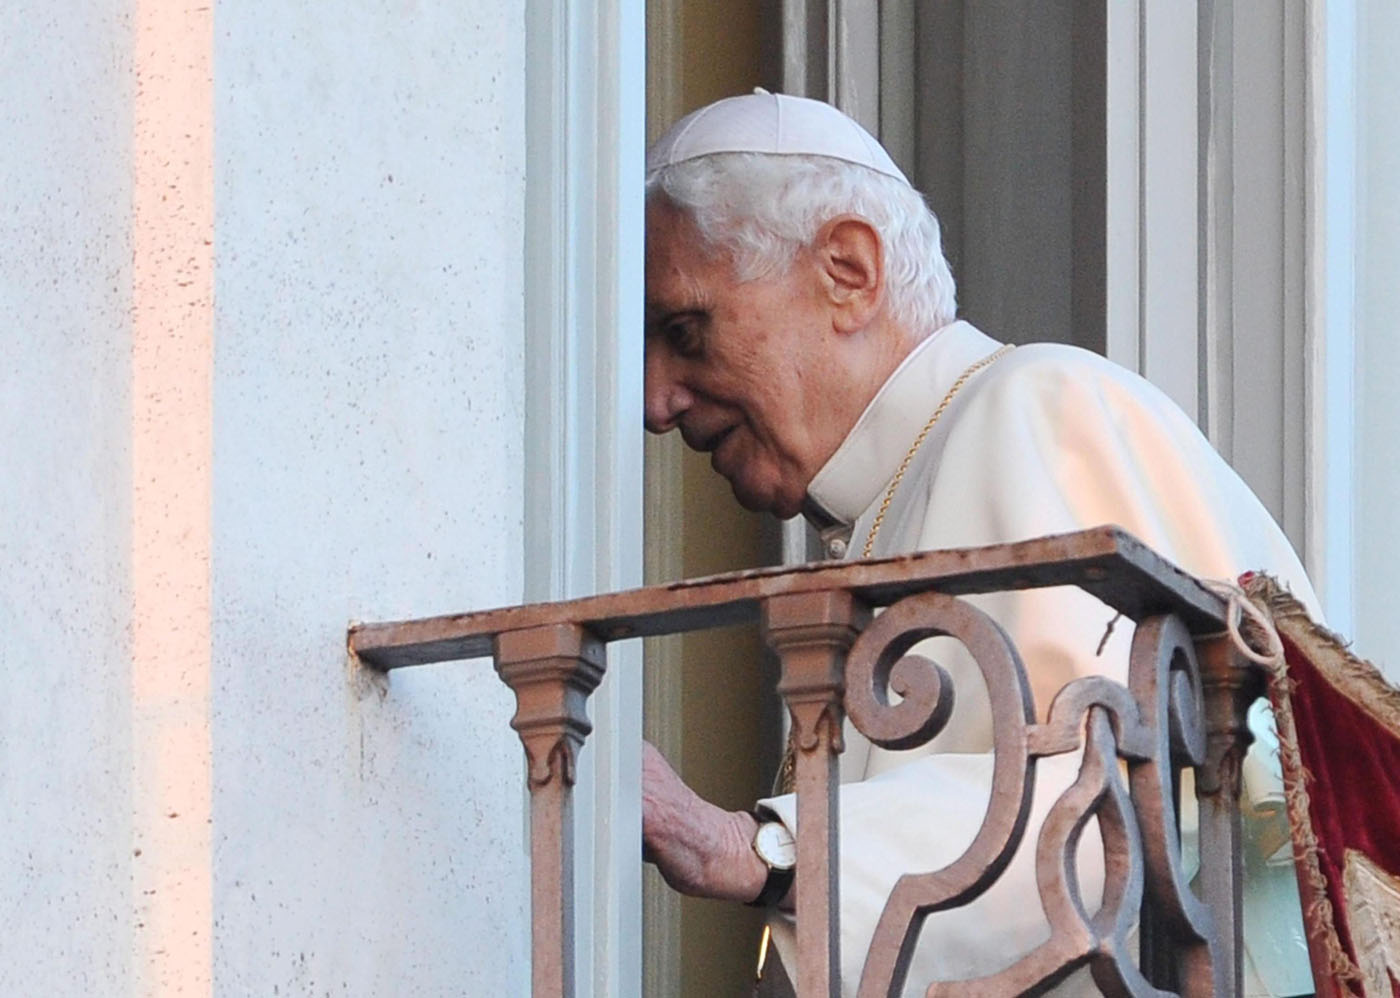 Benedicto XVI quiere defenderse en demanda por presunto caso de pederastia